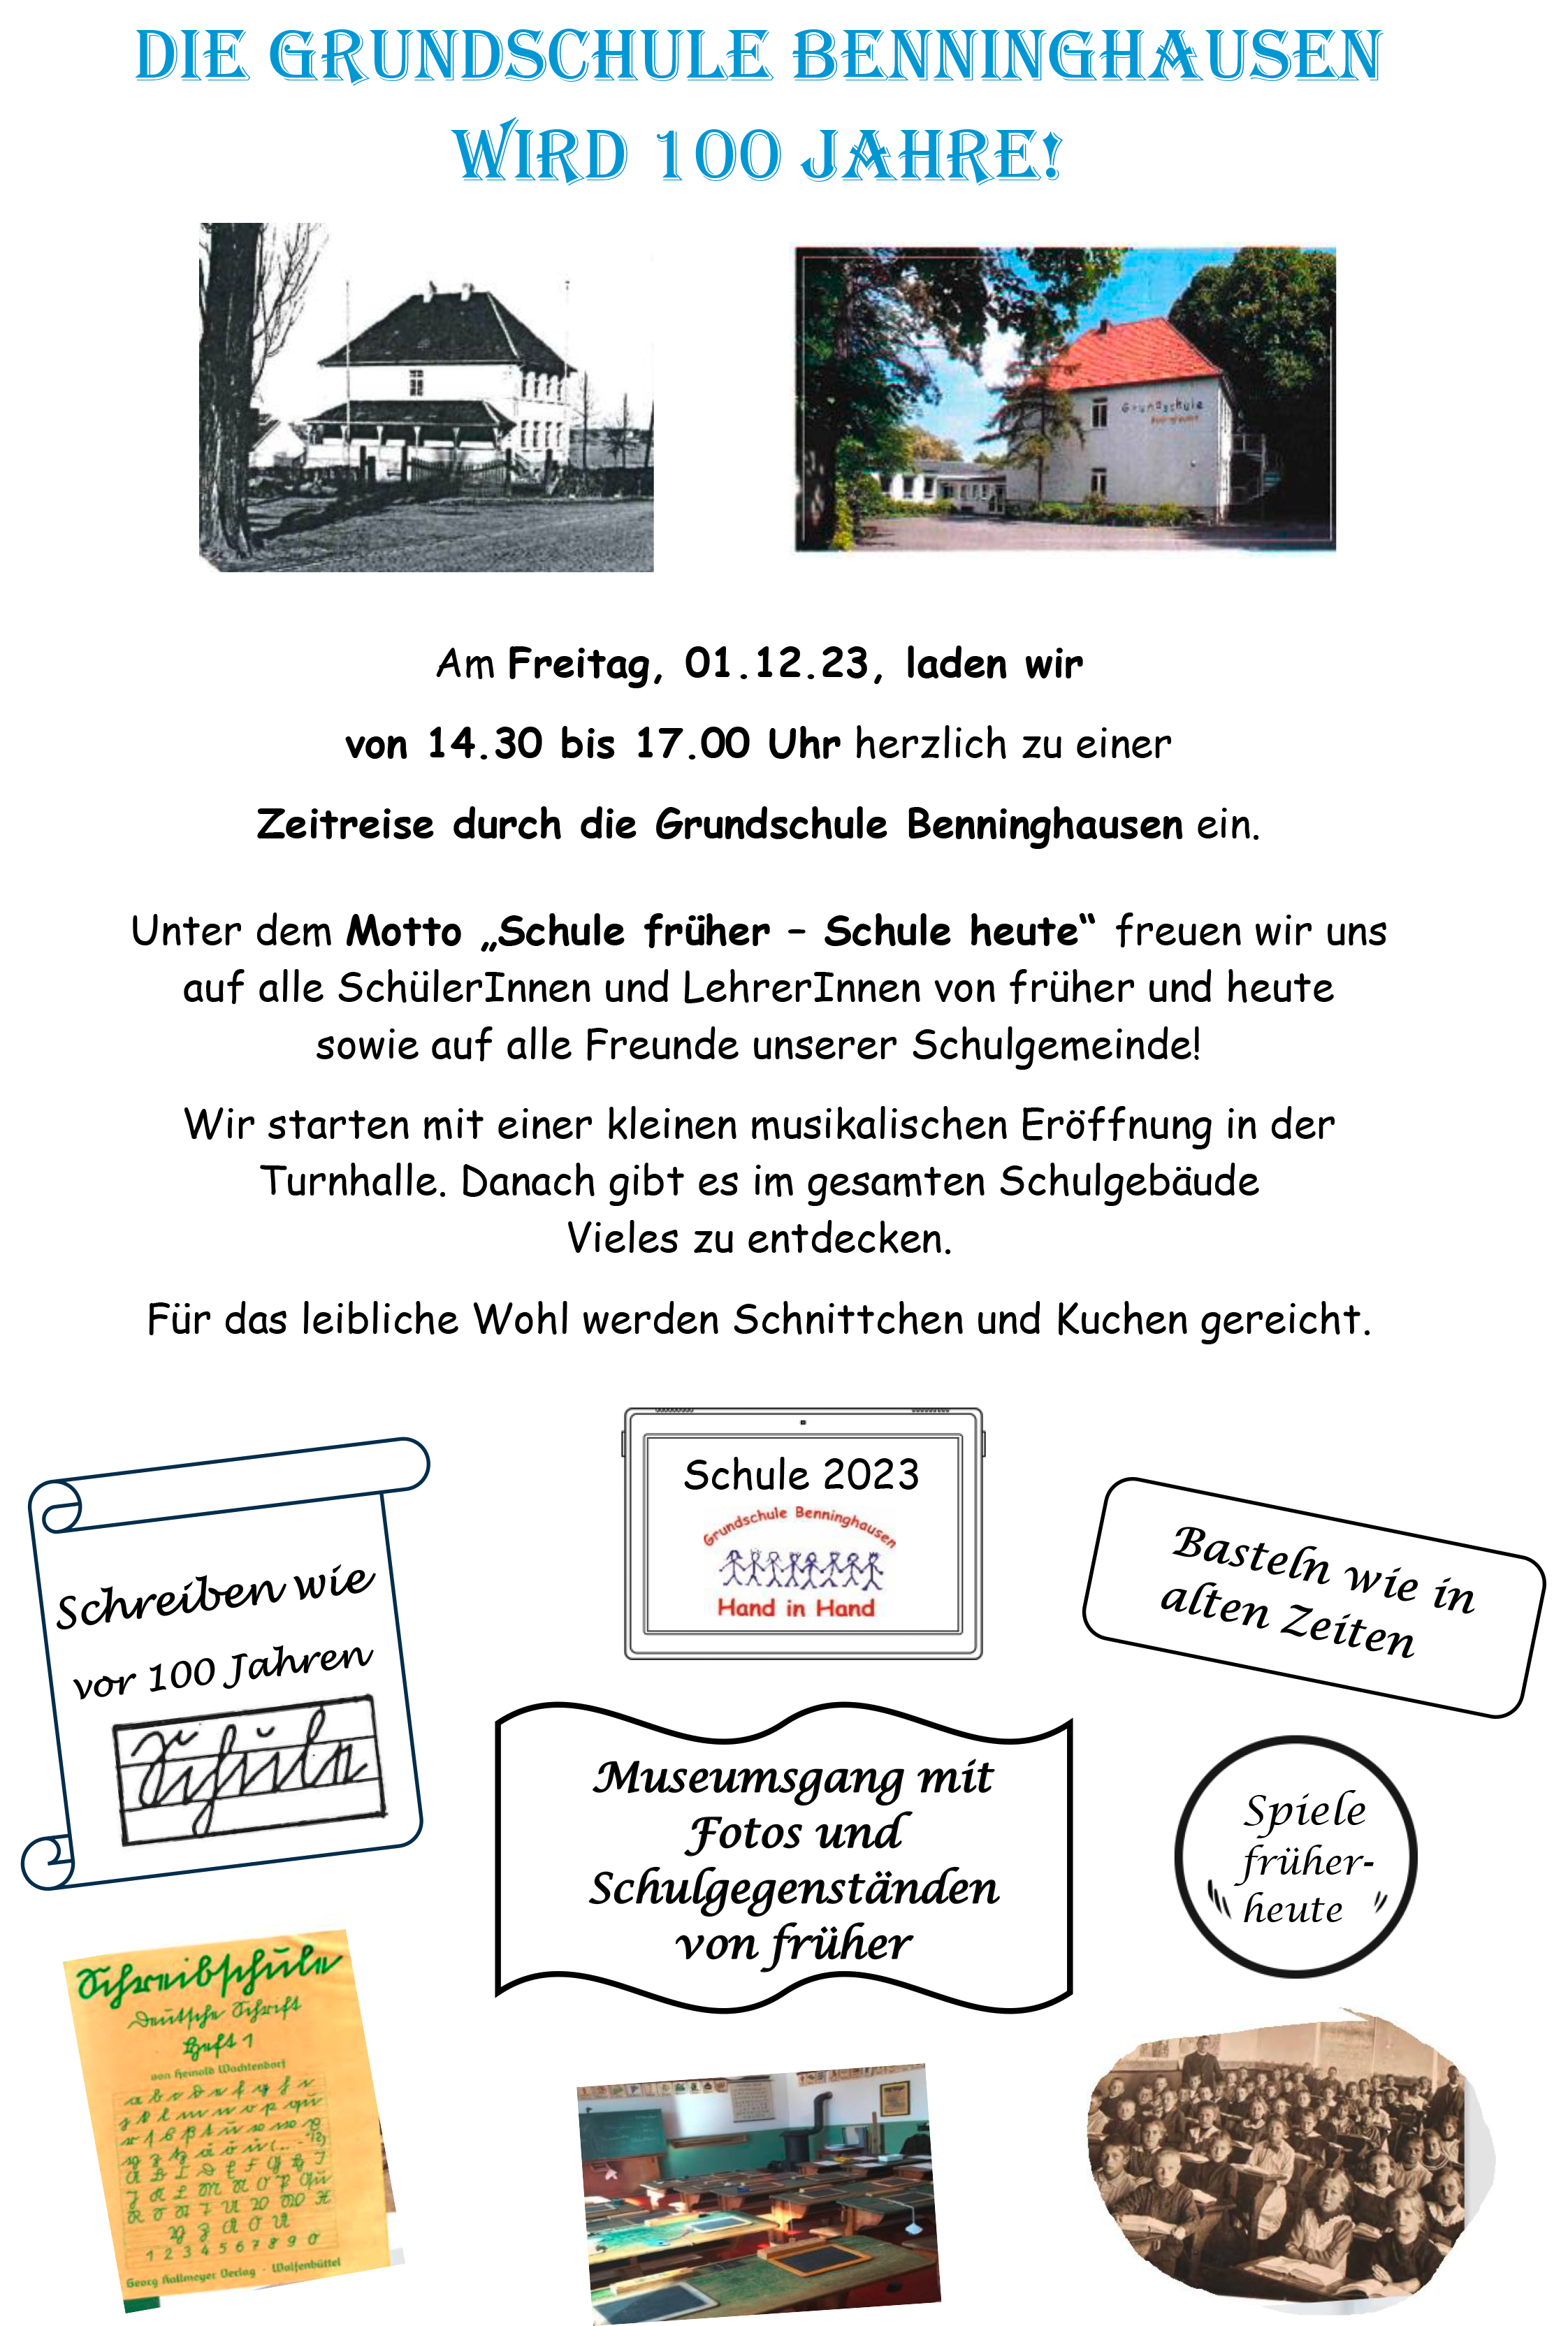 Die Grundschule Benninghausen wird 100 Jahre!